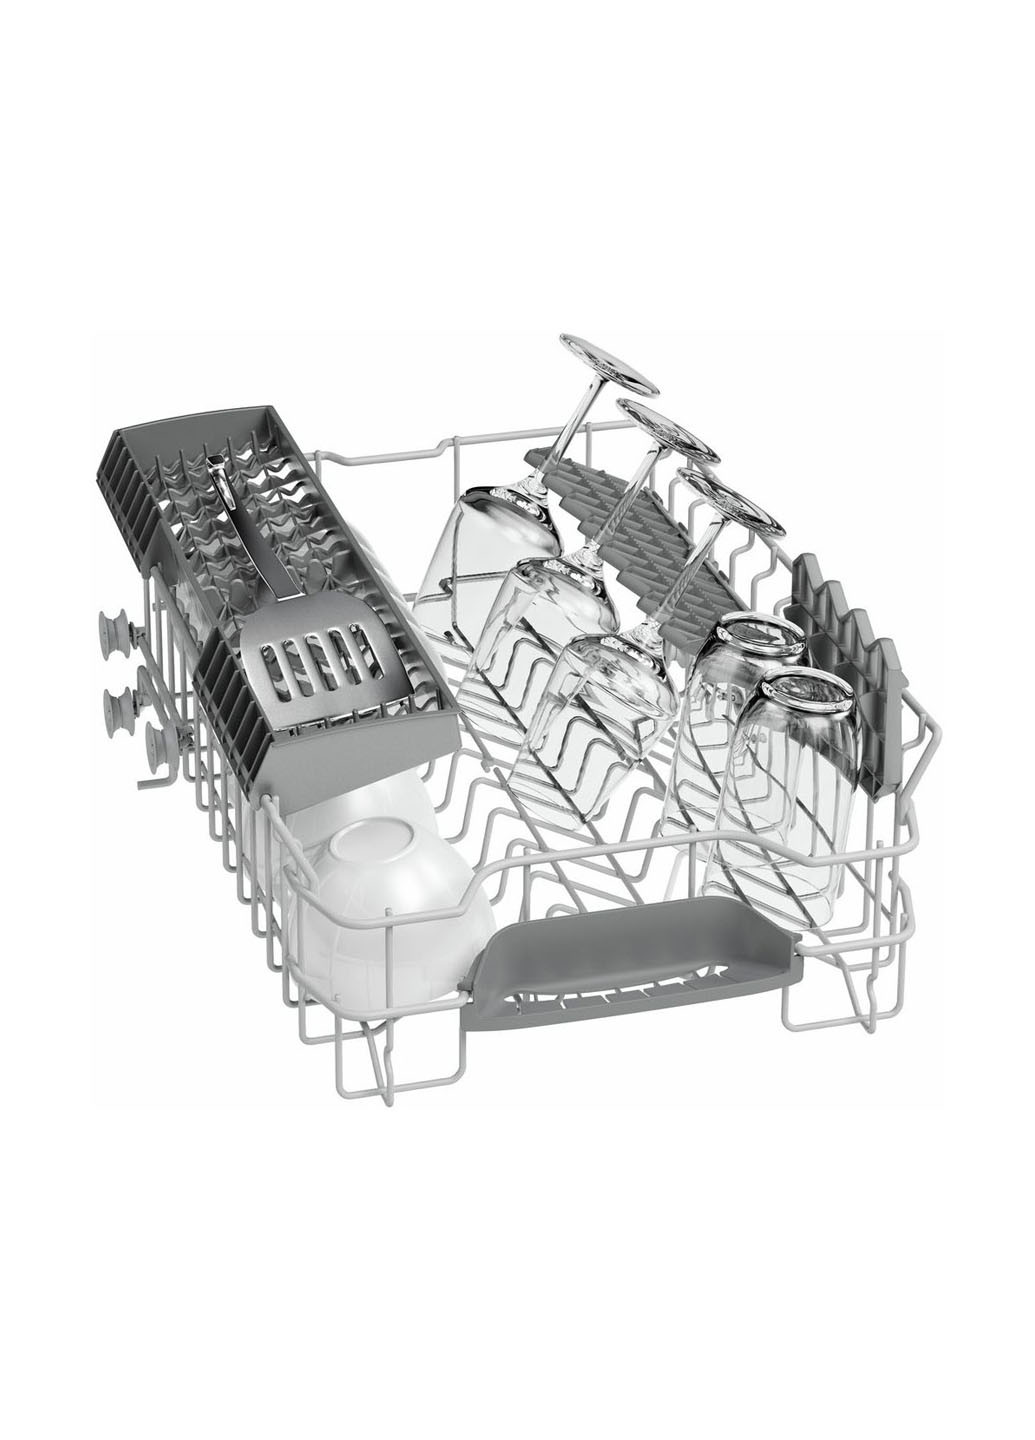 Посудомоечная машина полновстраиваемая Bosch SPV24CX00E